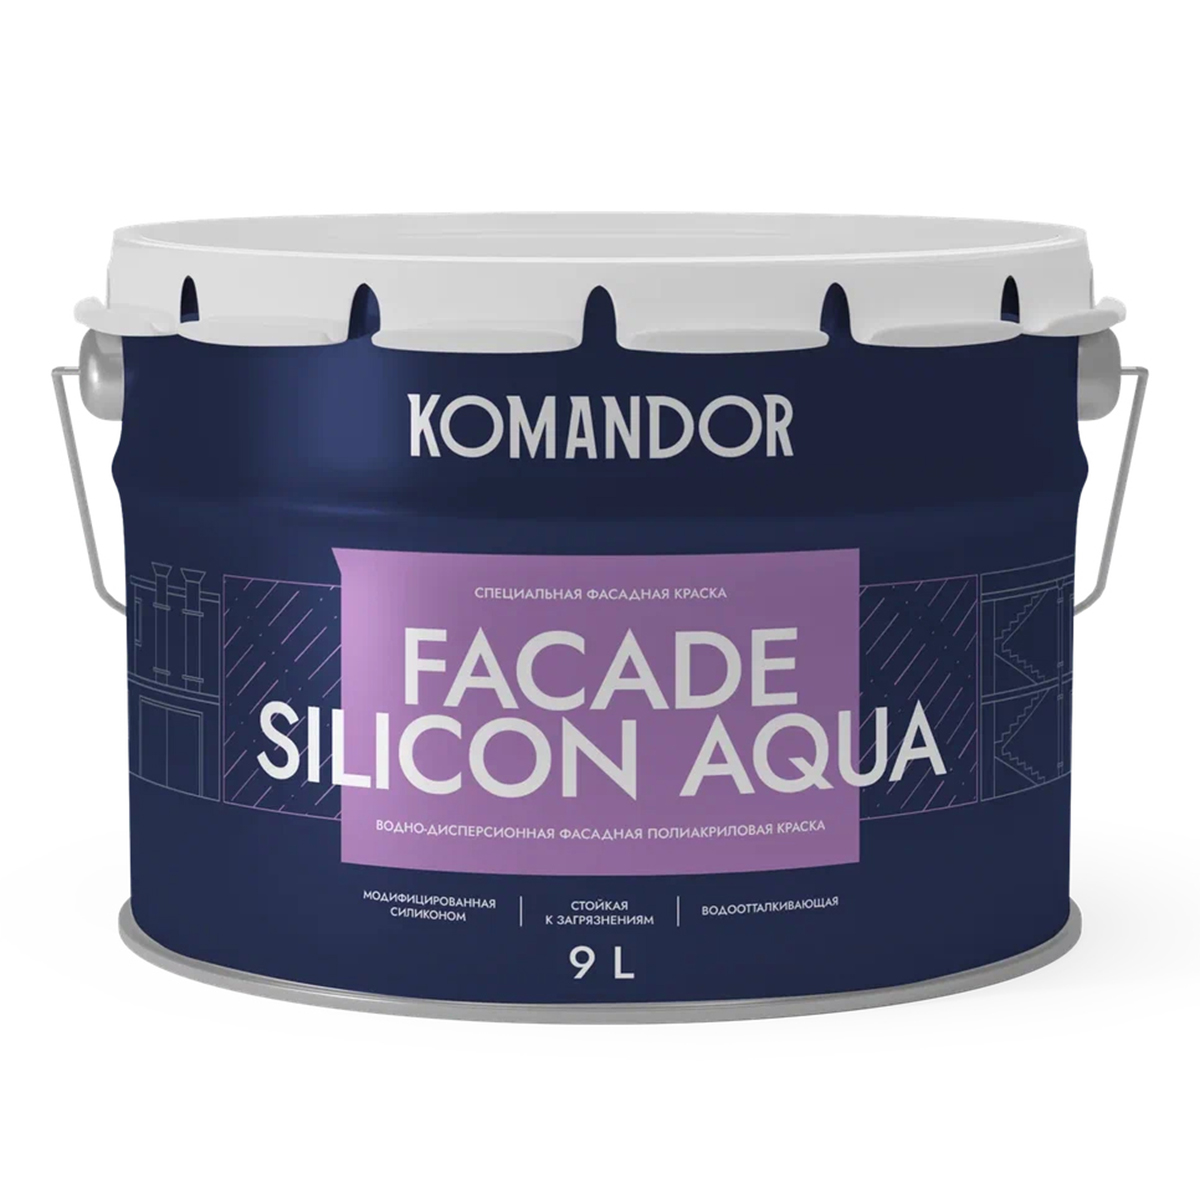 Краска фасадная Komandor Facade Silicon Aqua, глубокоматовая, база С, бесцветный, 9 л краска фасадная komandor facade silicon aqua глубокоматовая база с бесцветный 2 7 л